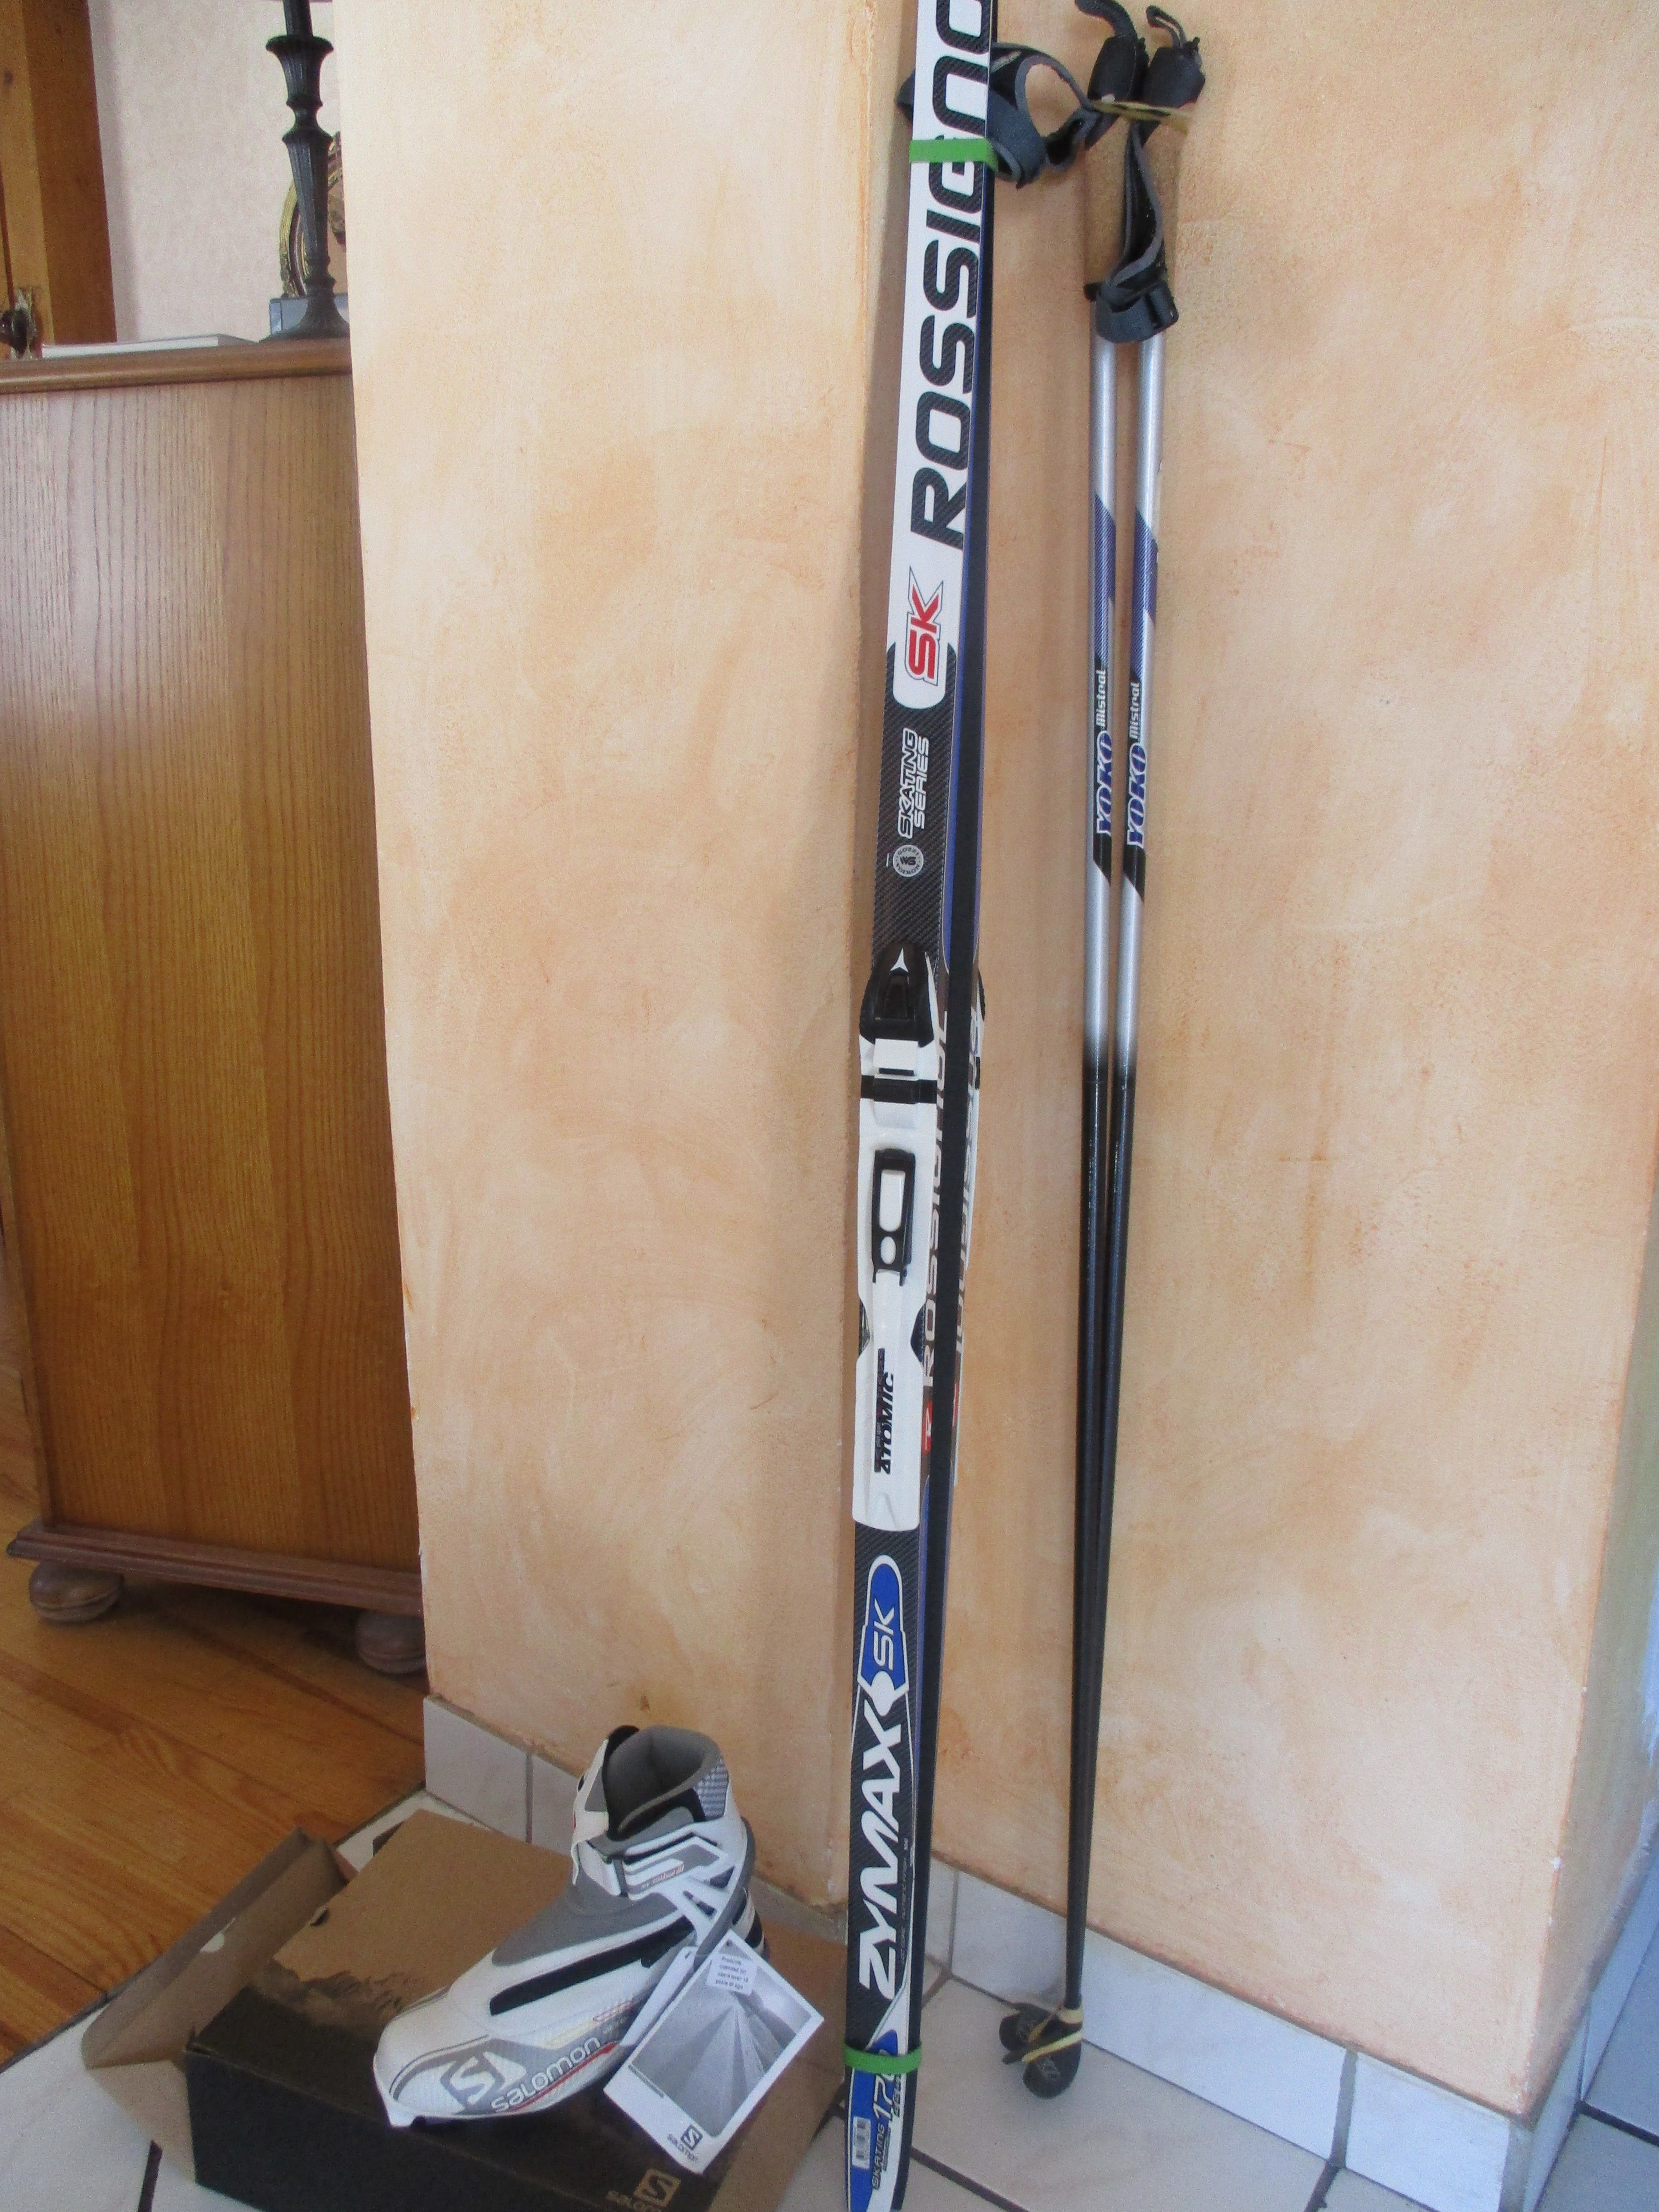 skis rossignol , chaussures salomon, bâtons pour skeeting
240 Saint-Pierre-de-Chartreuse (38)